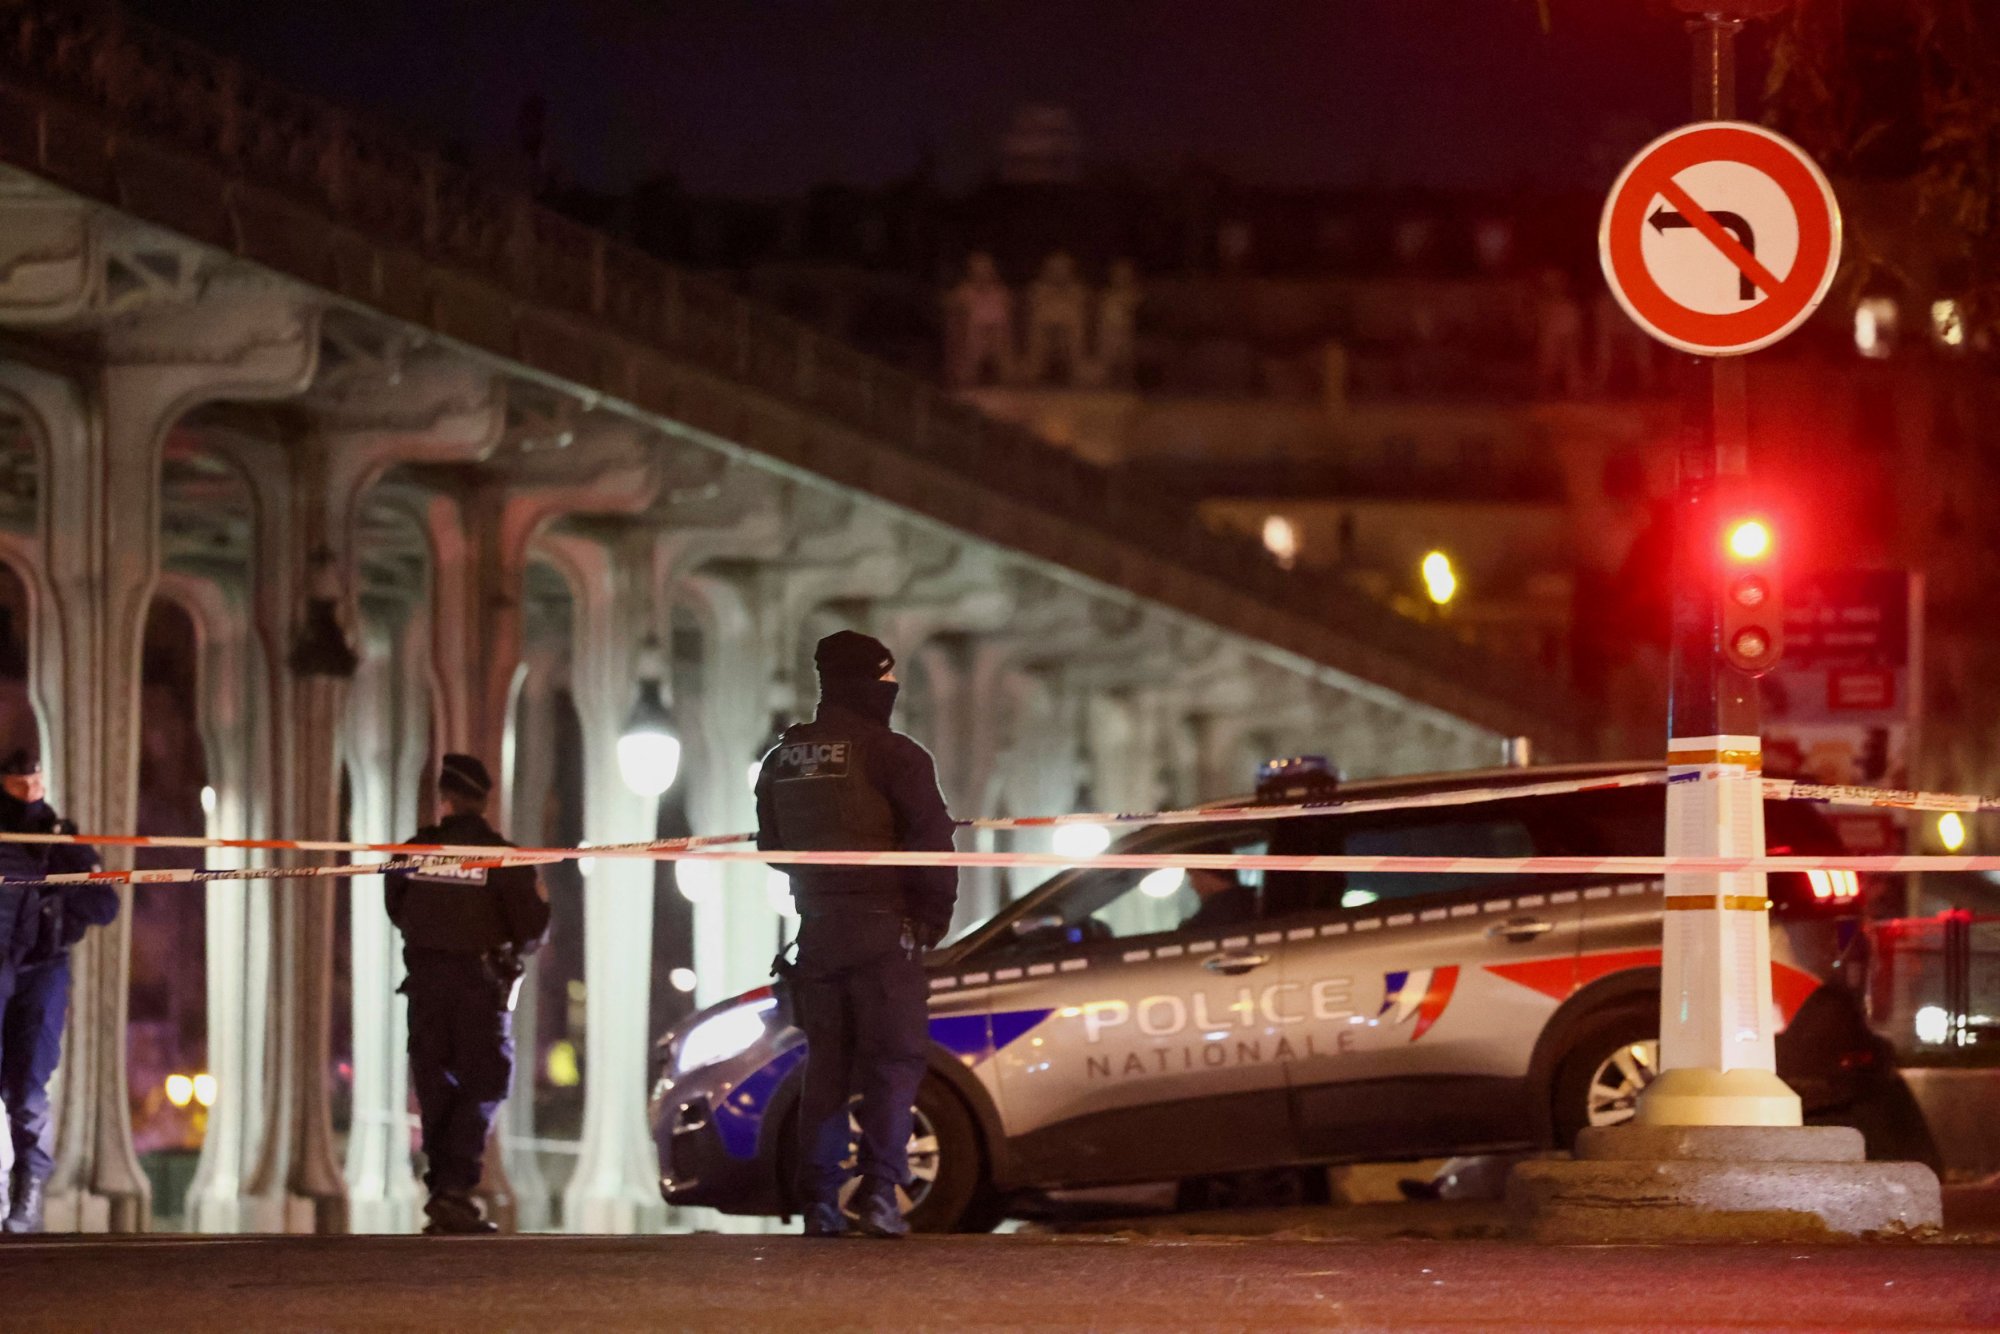 Γαλλία: Ένας νεκρός από την επίθεση με μαχαίρι στο κέντρο του Παρισιού